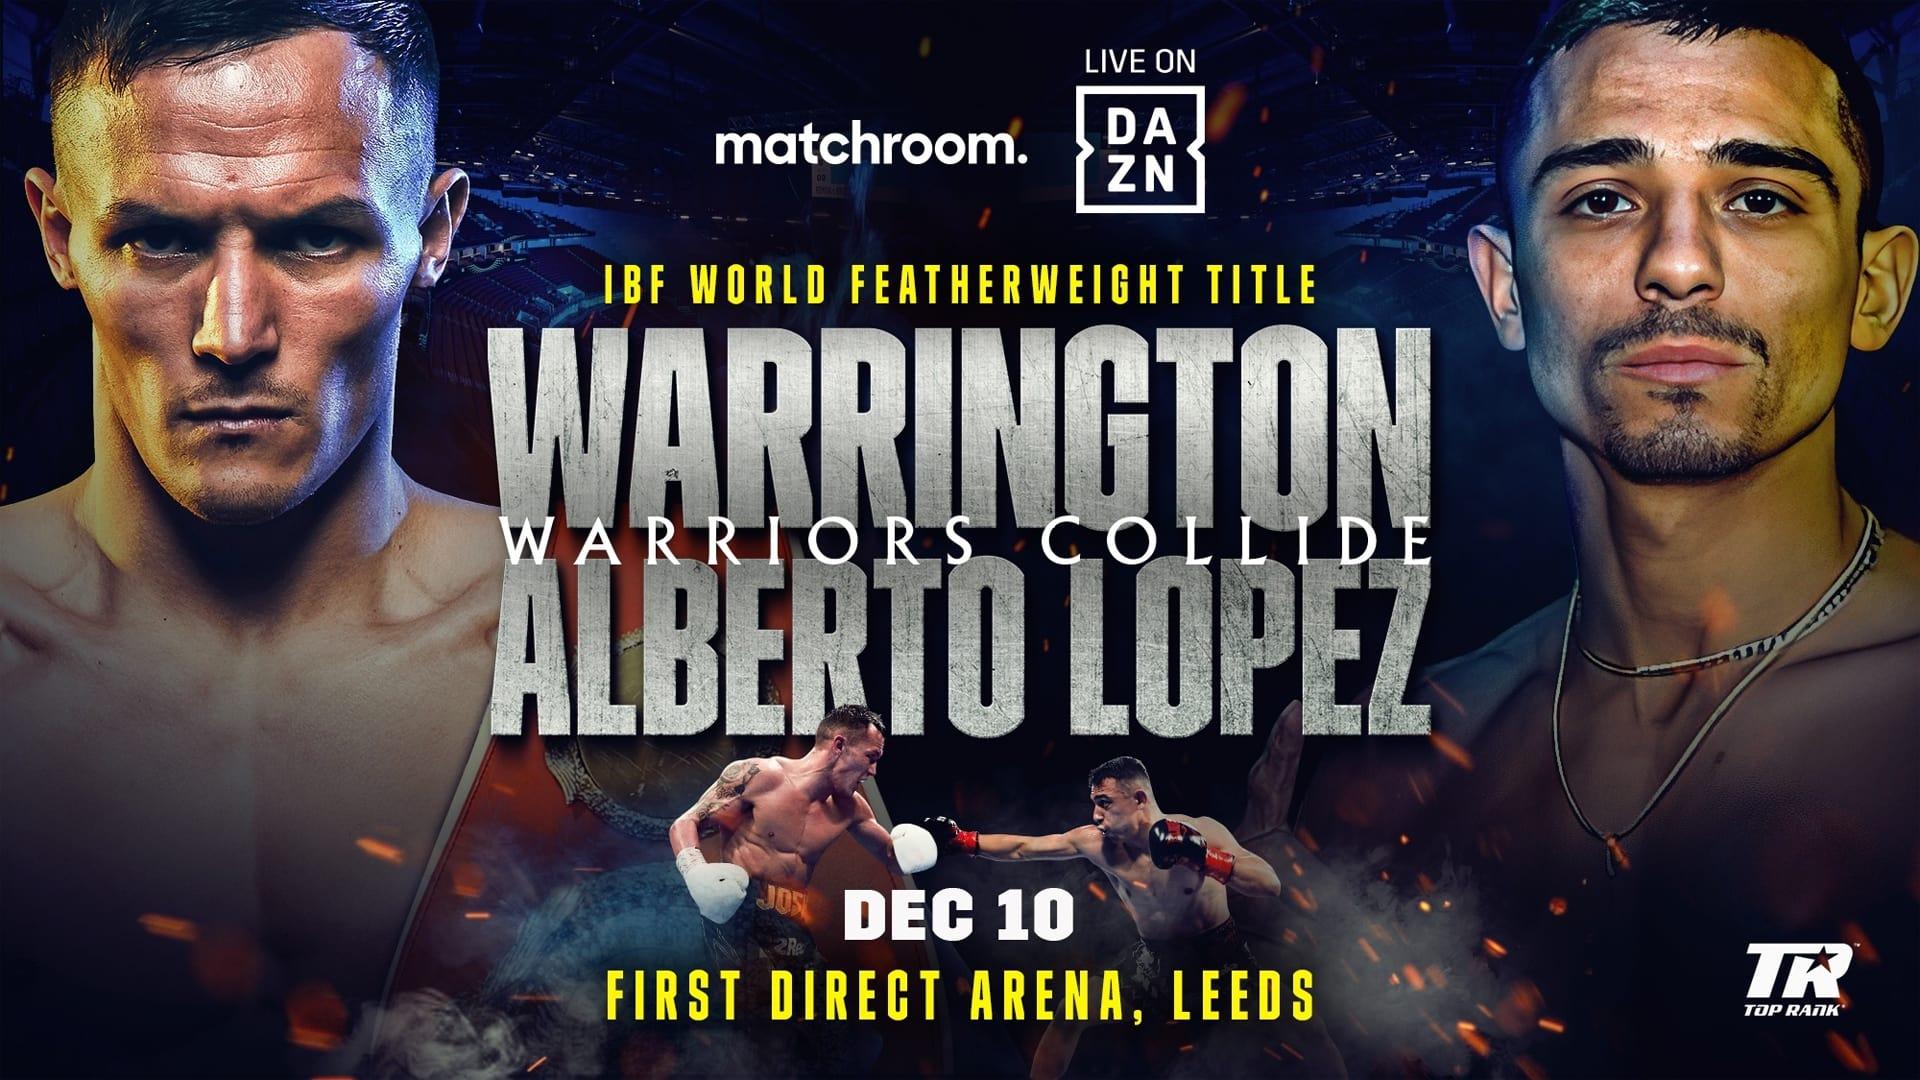 Josh Warrington vs. Luis Alberto Lopez backdrop